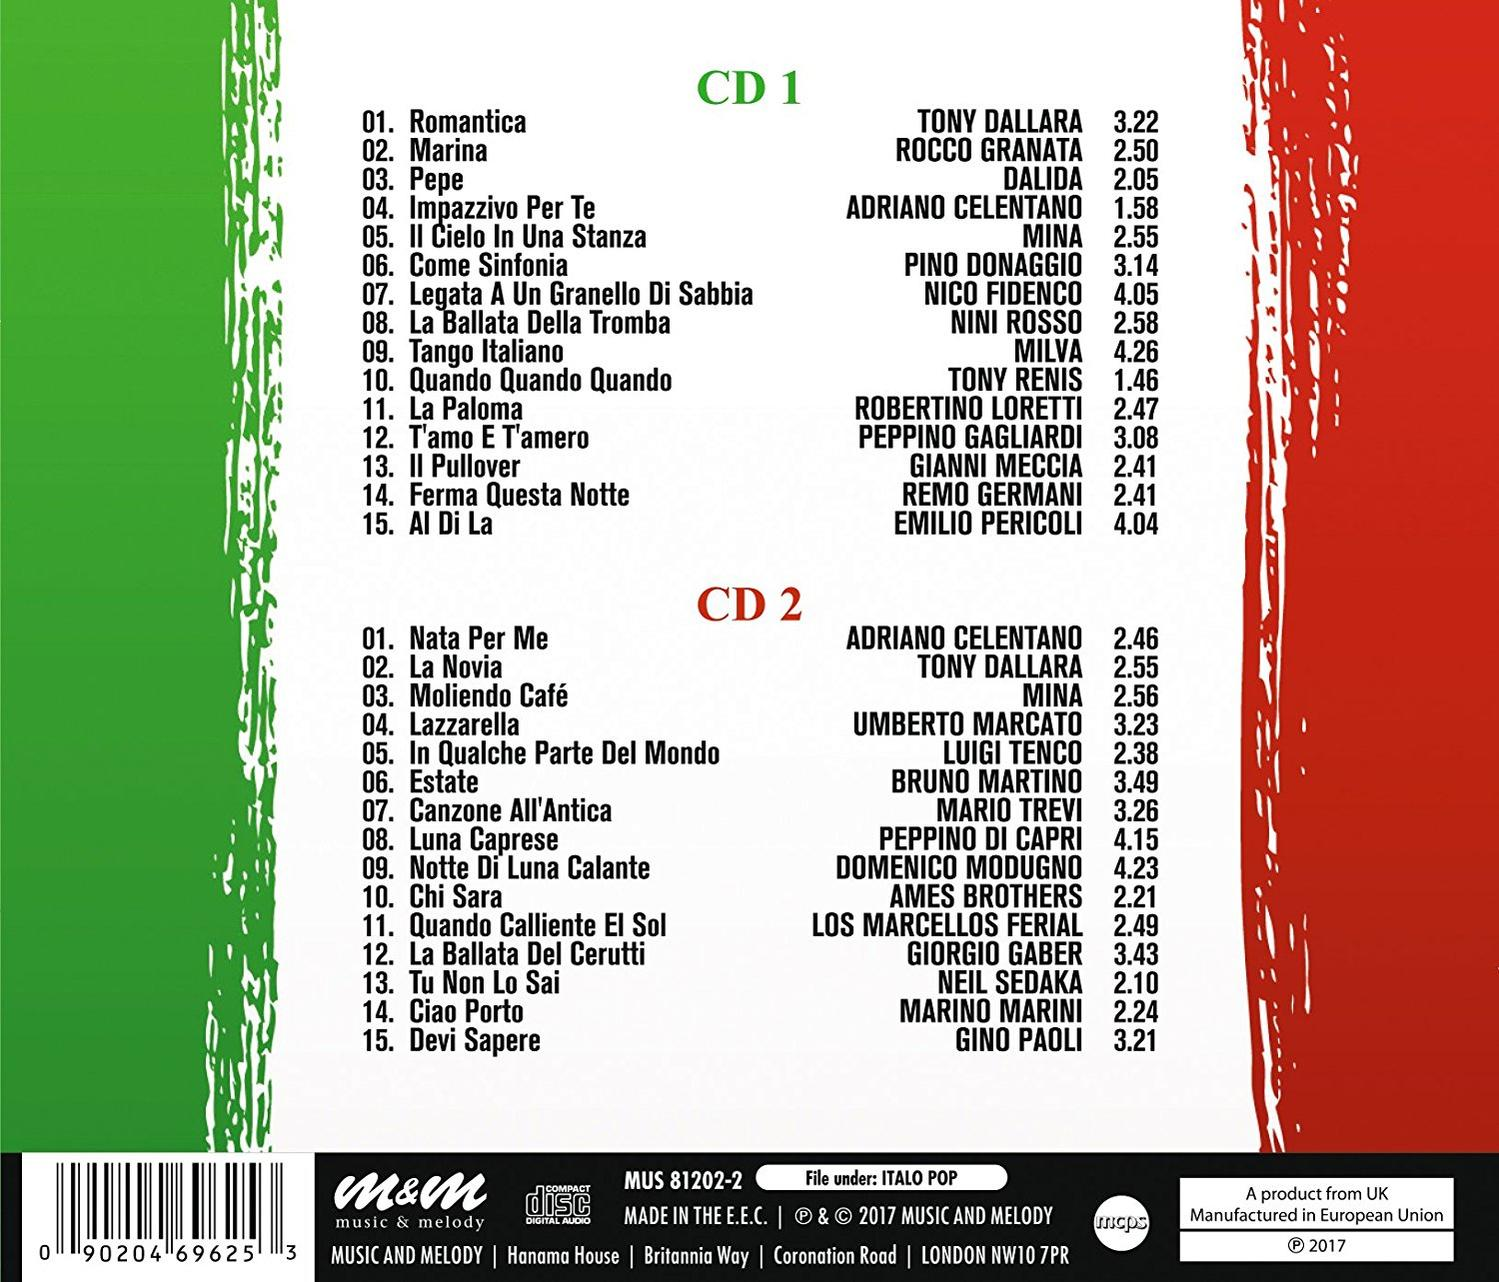 VARIOUS - Pop - (CD) Italo 60s Hits